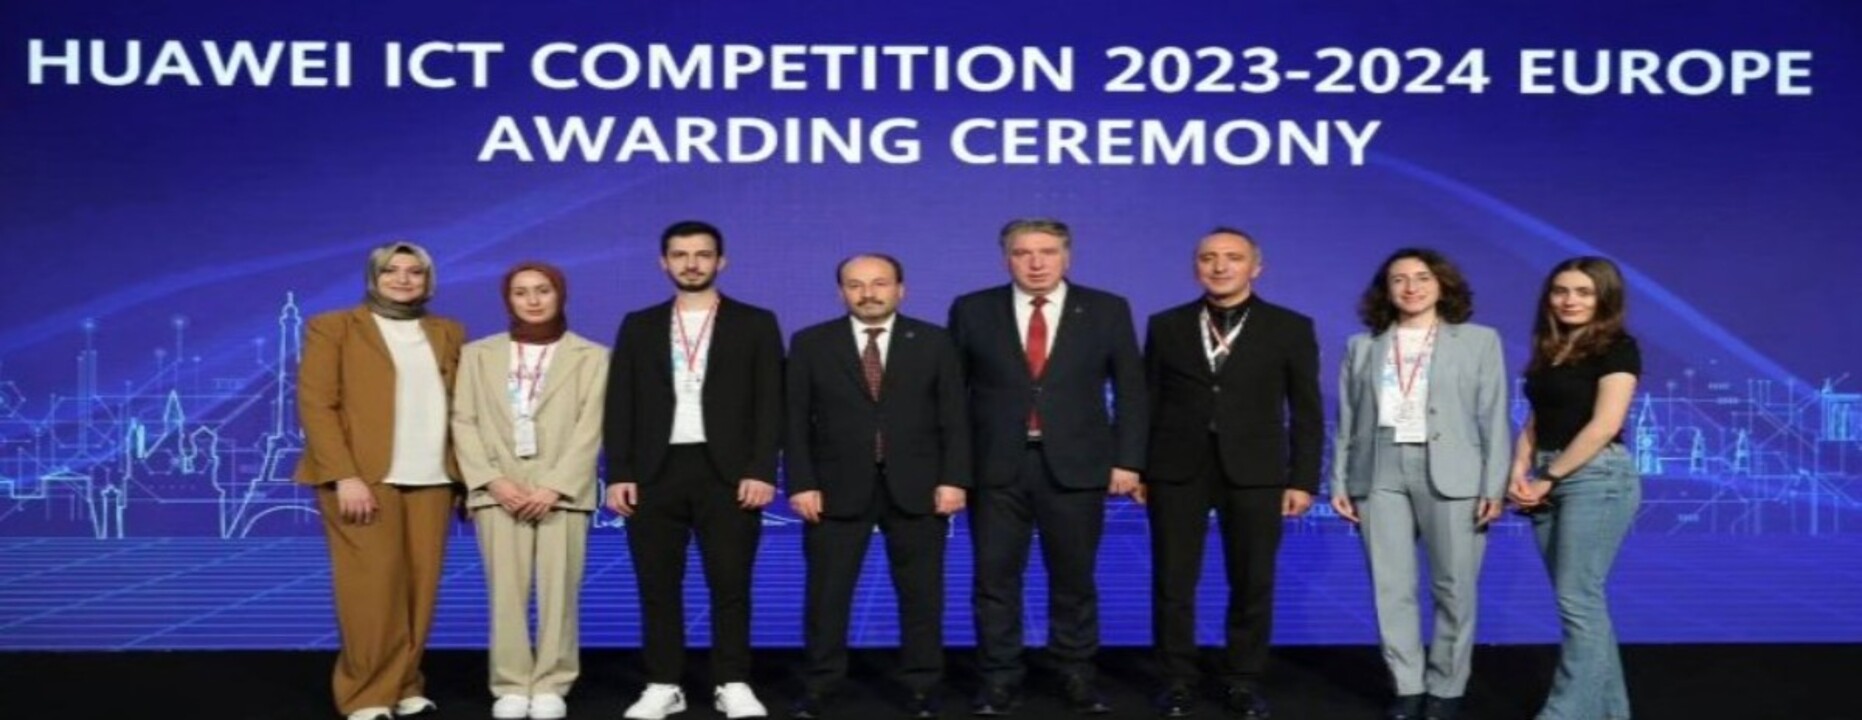 huawei ict yarışması türk öğrencilerin başarısı